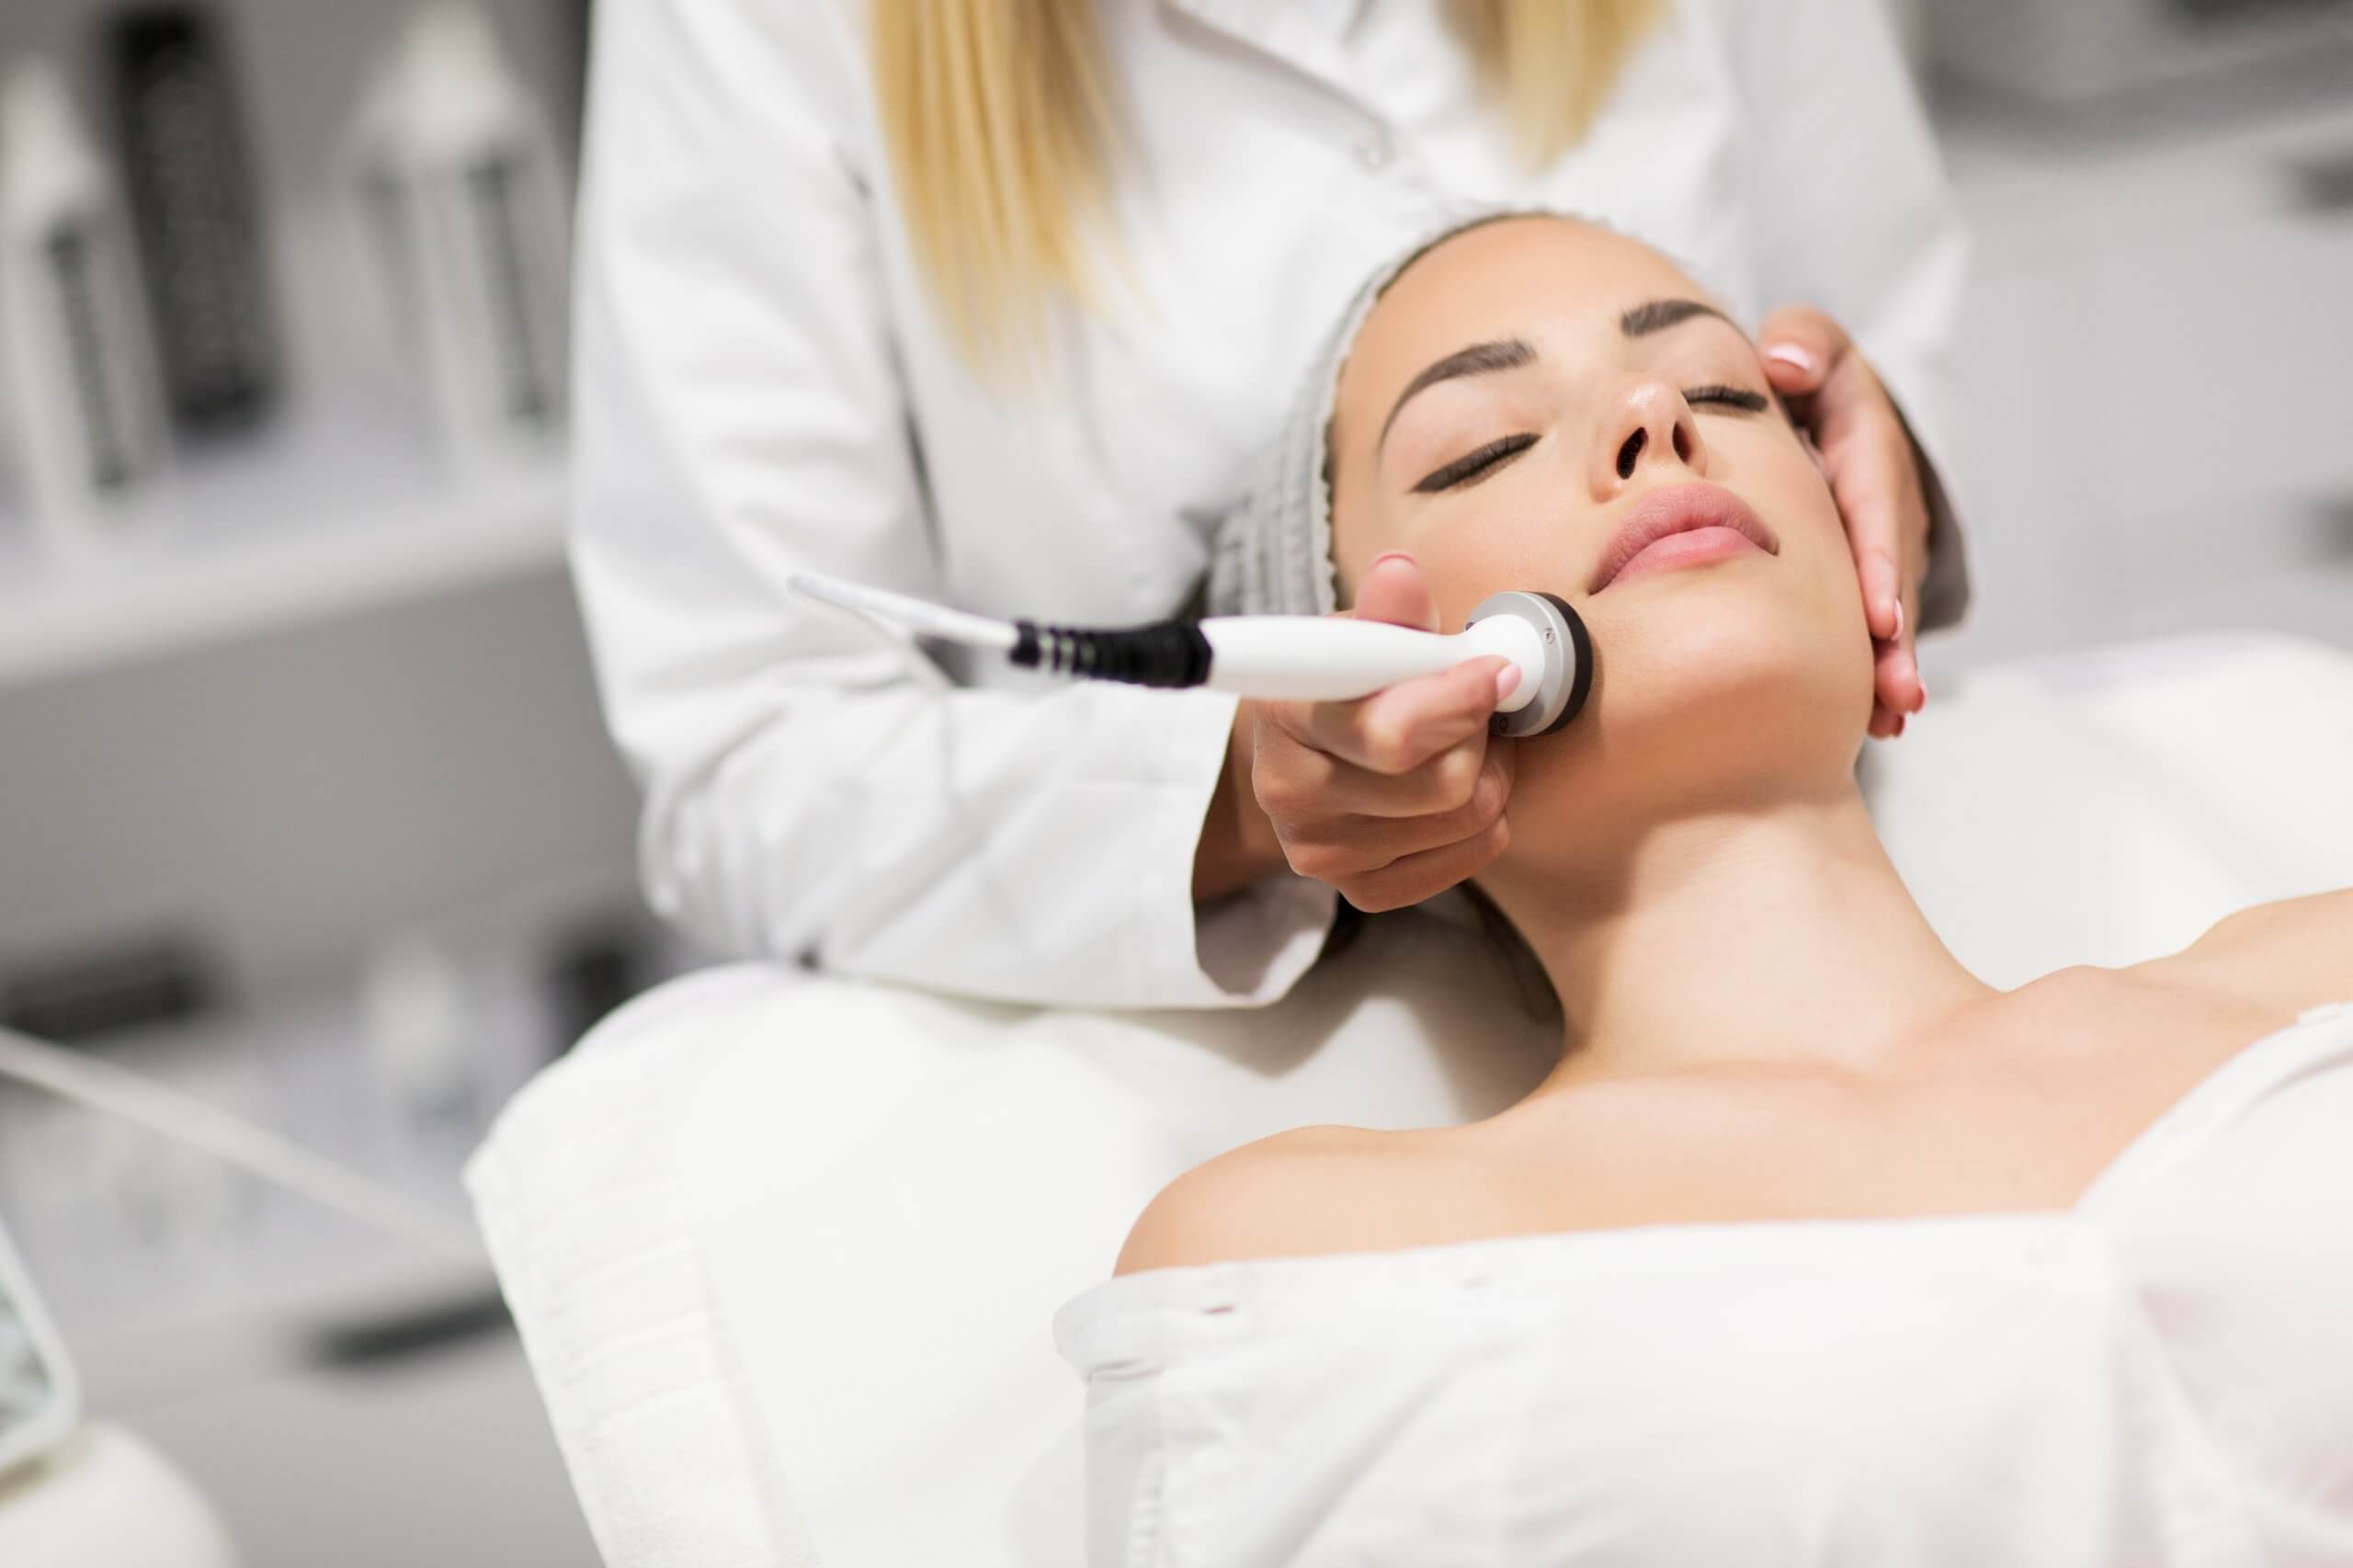 laser skin rejuvenation training on real clients